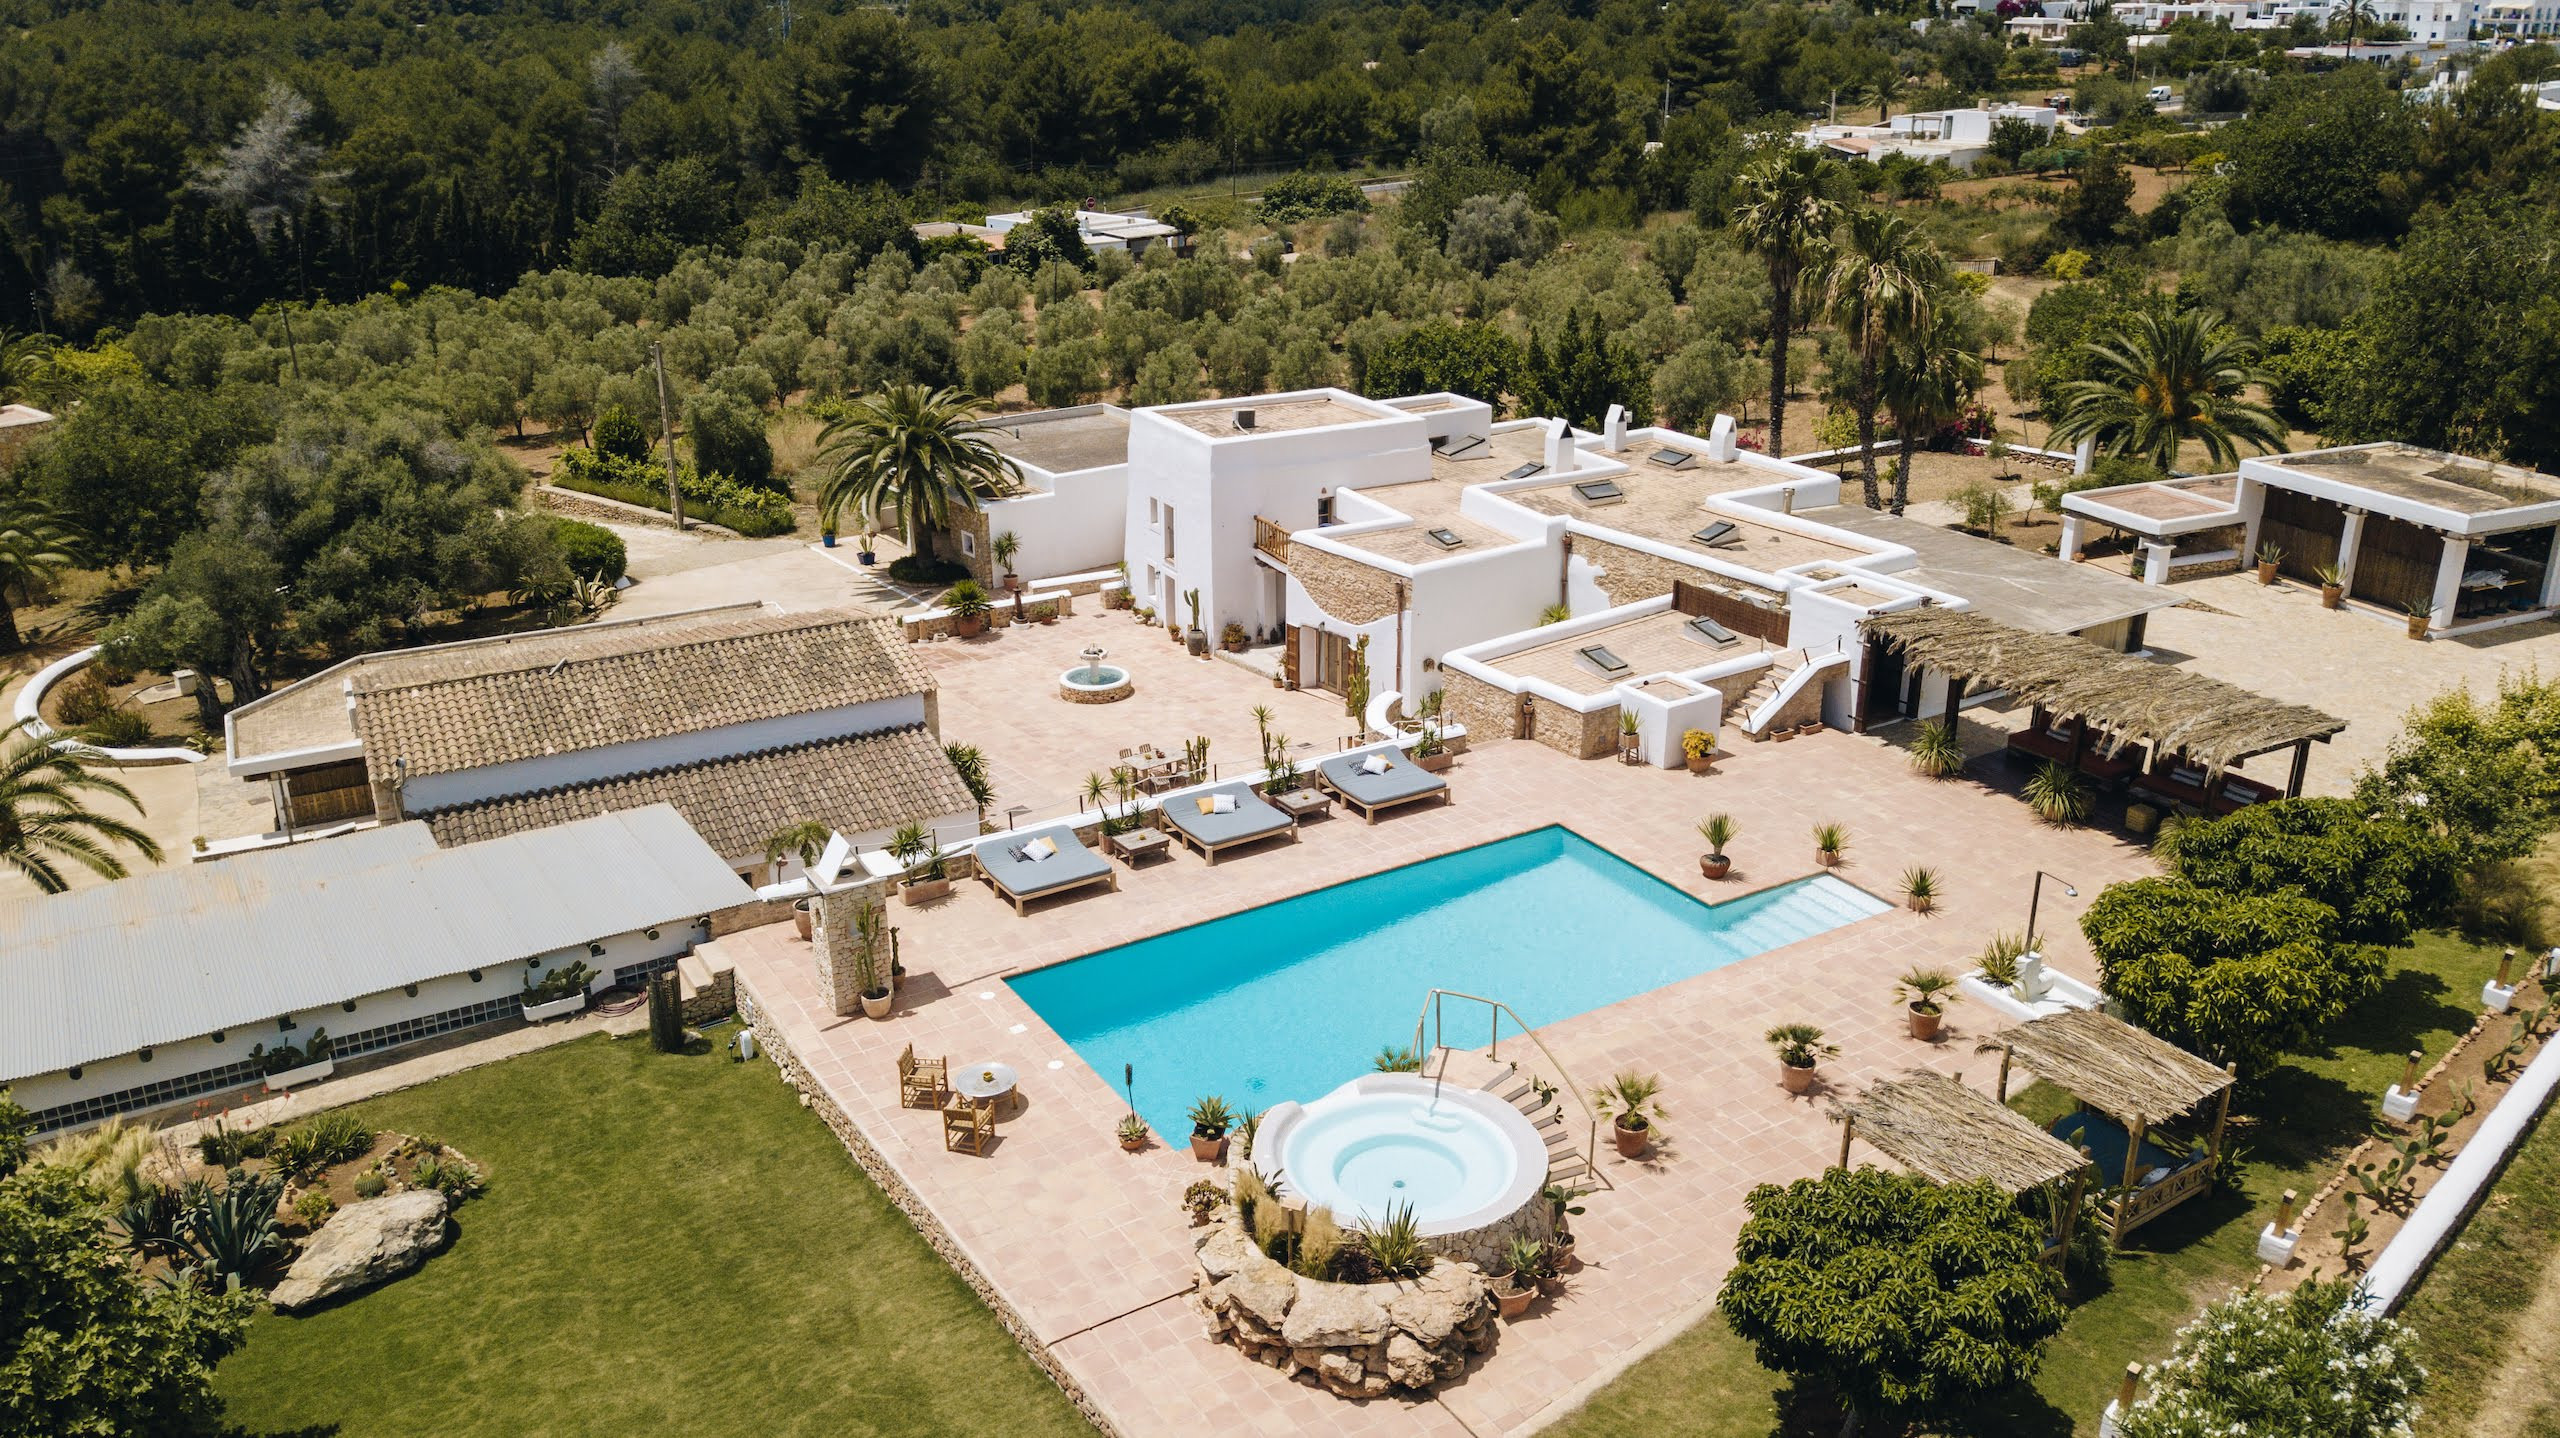 Luftaufnahme der Villa Las Hadas in Ibiza mit ihrem Pool, Terrasse und Jacuzzi